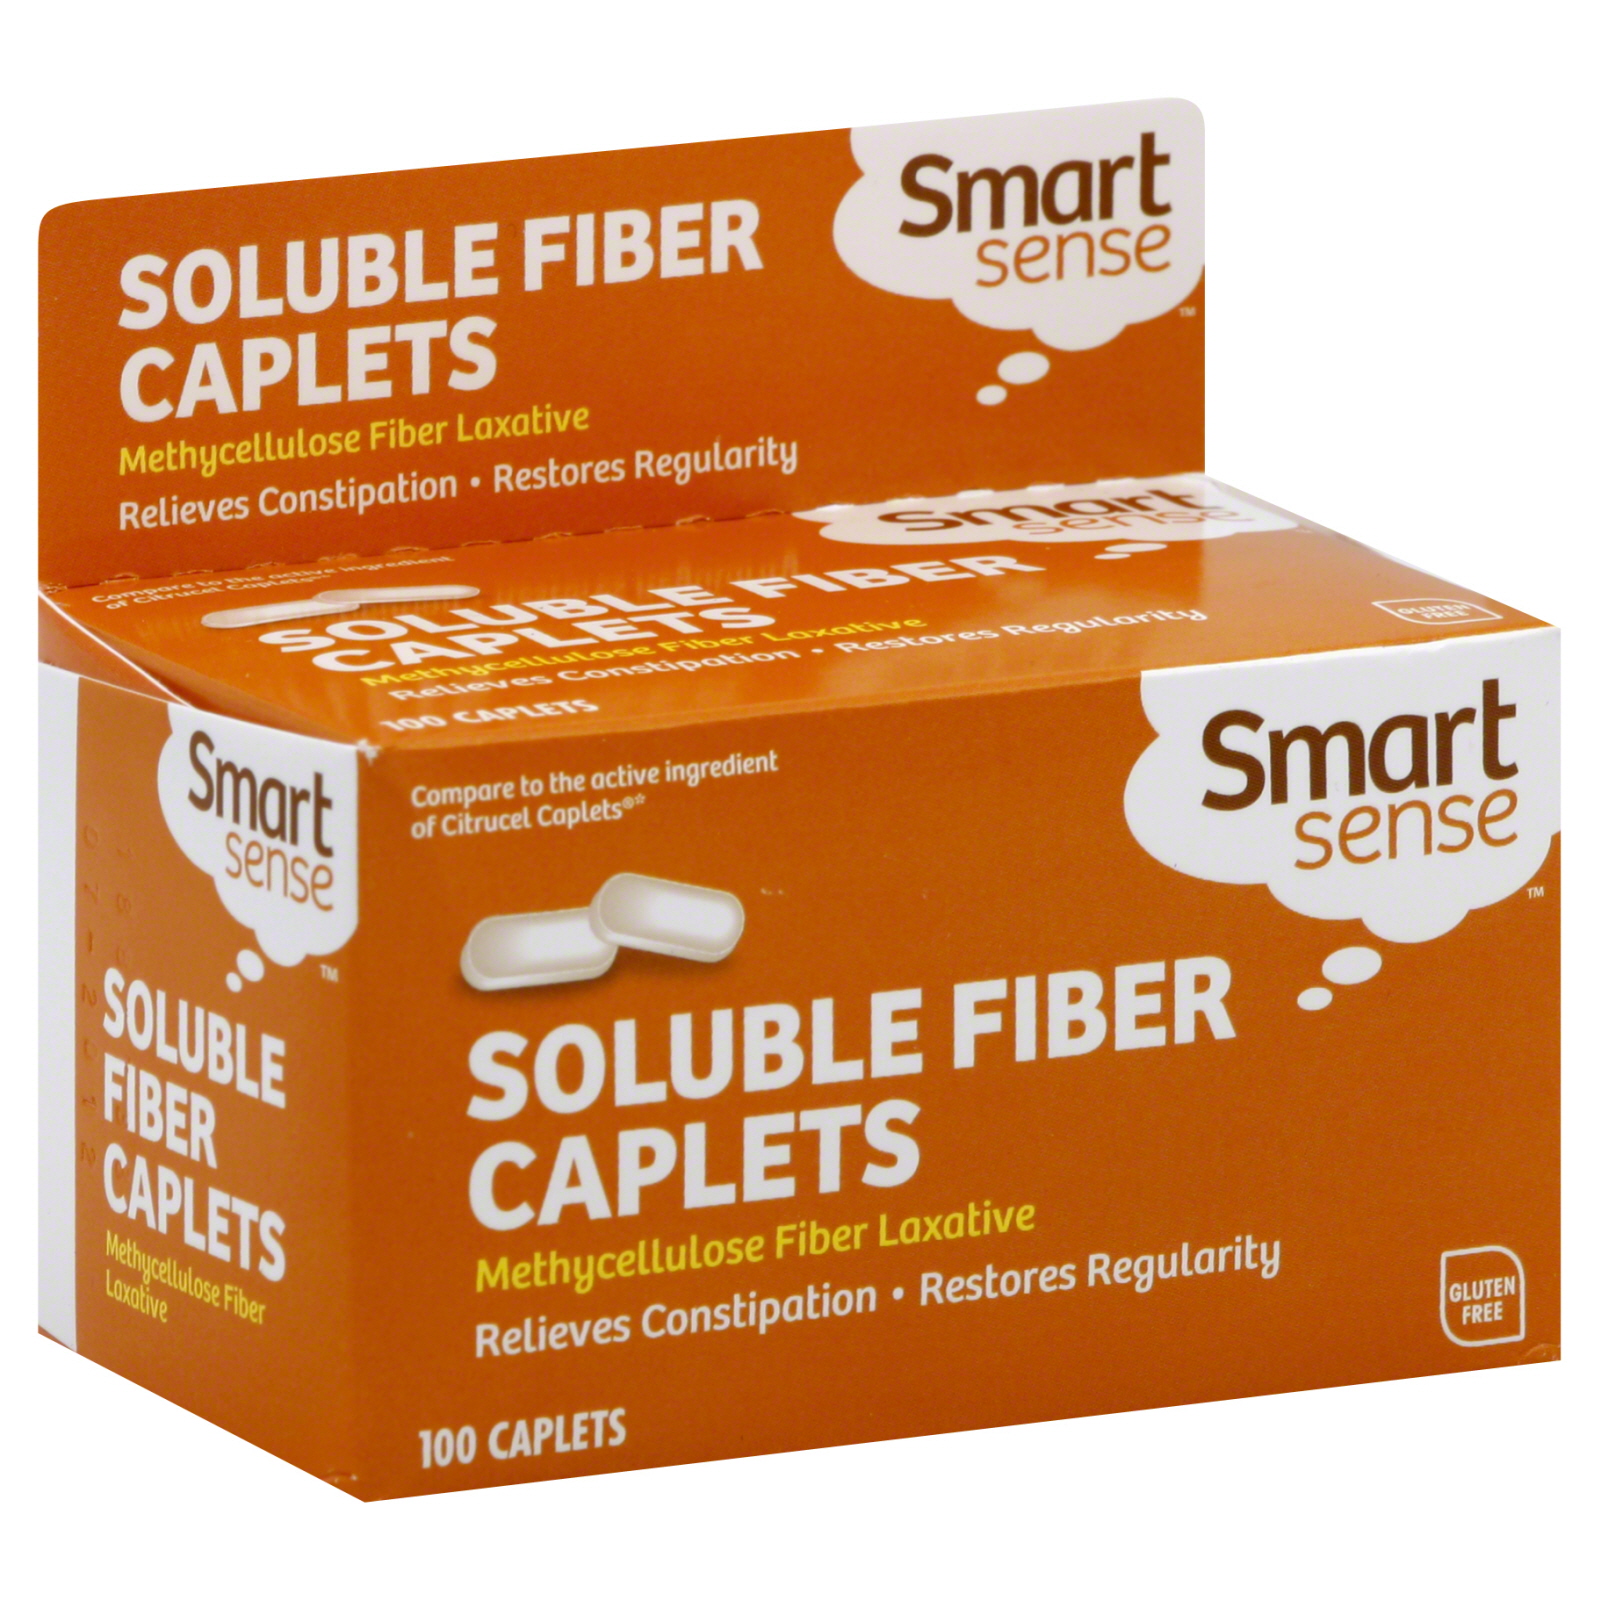 Soluble Fiber, Caplets 100 caplets